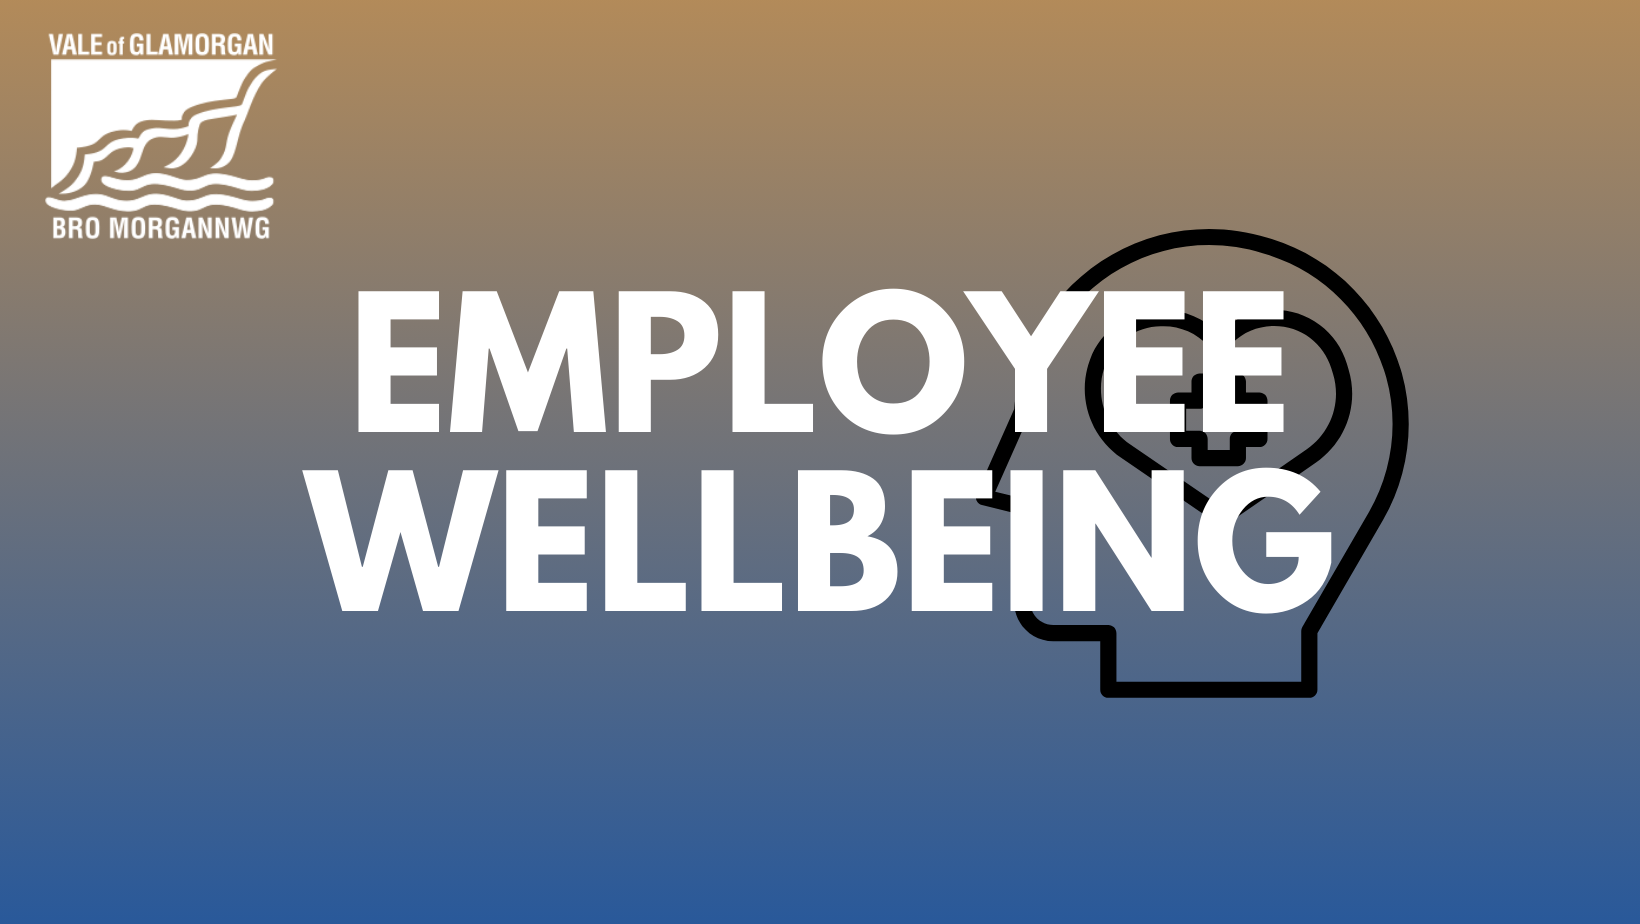 Employee Wellbeing